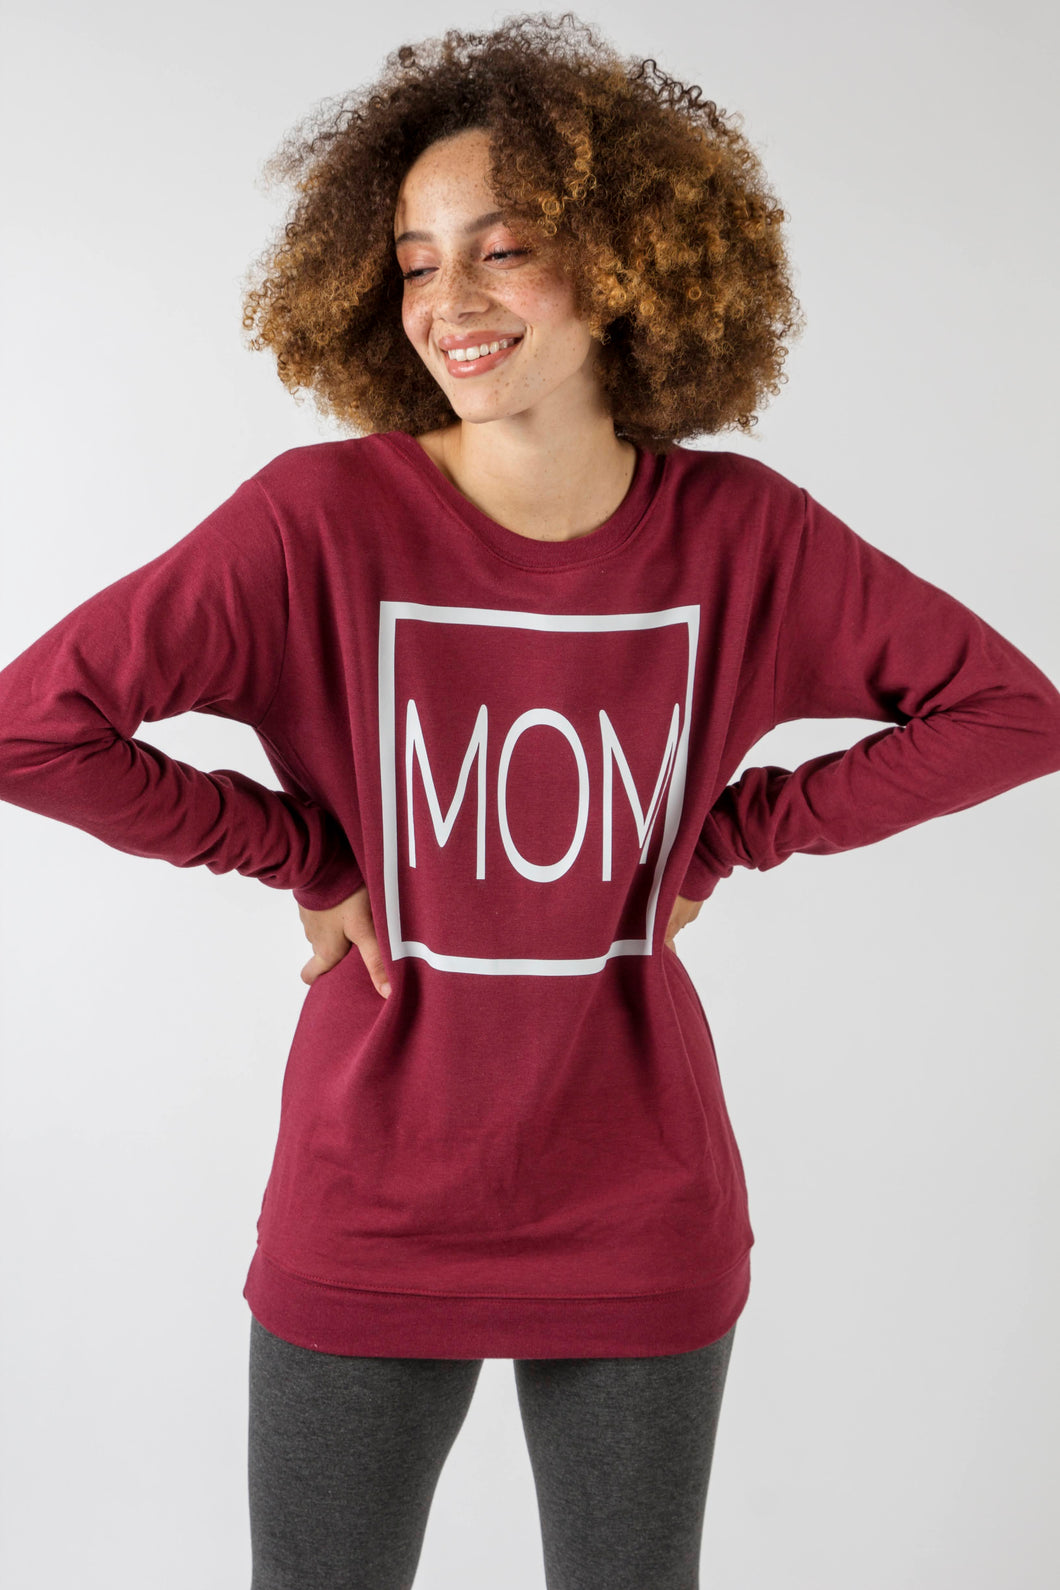 Mom Sweatshirt - Various Colors